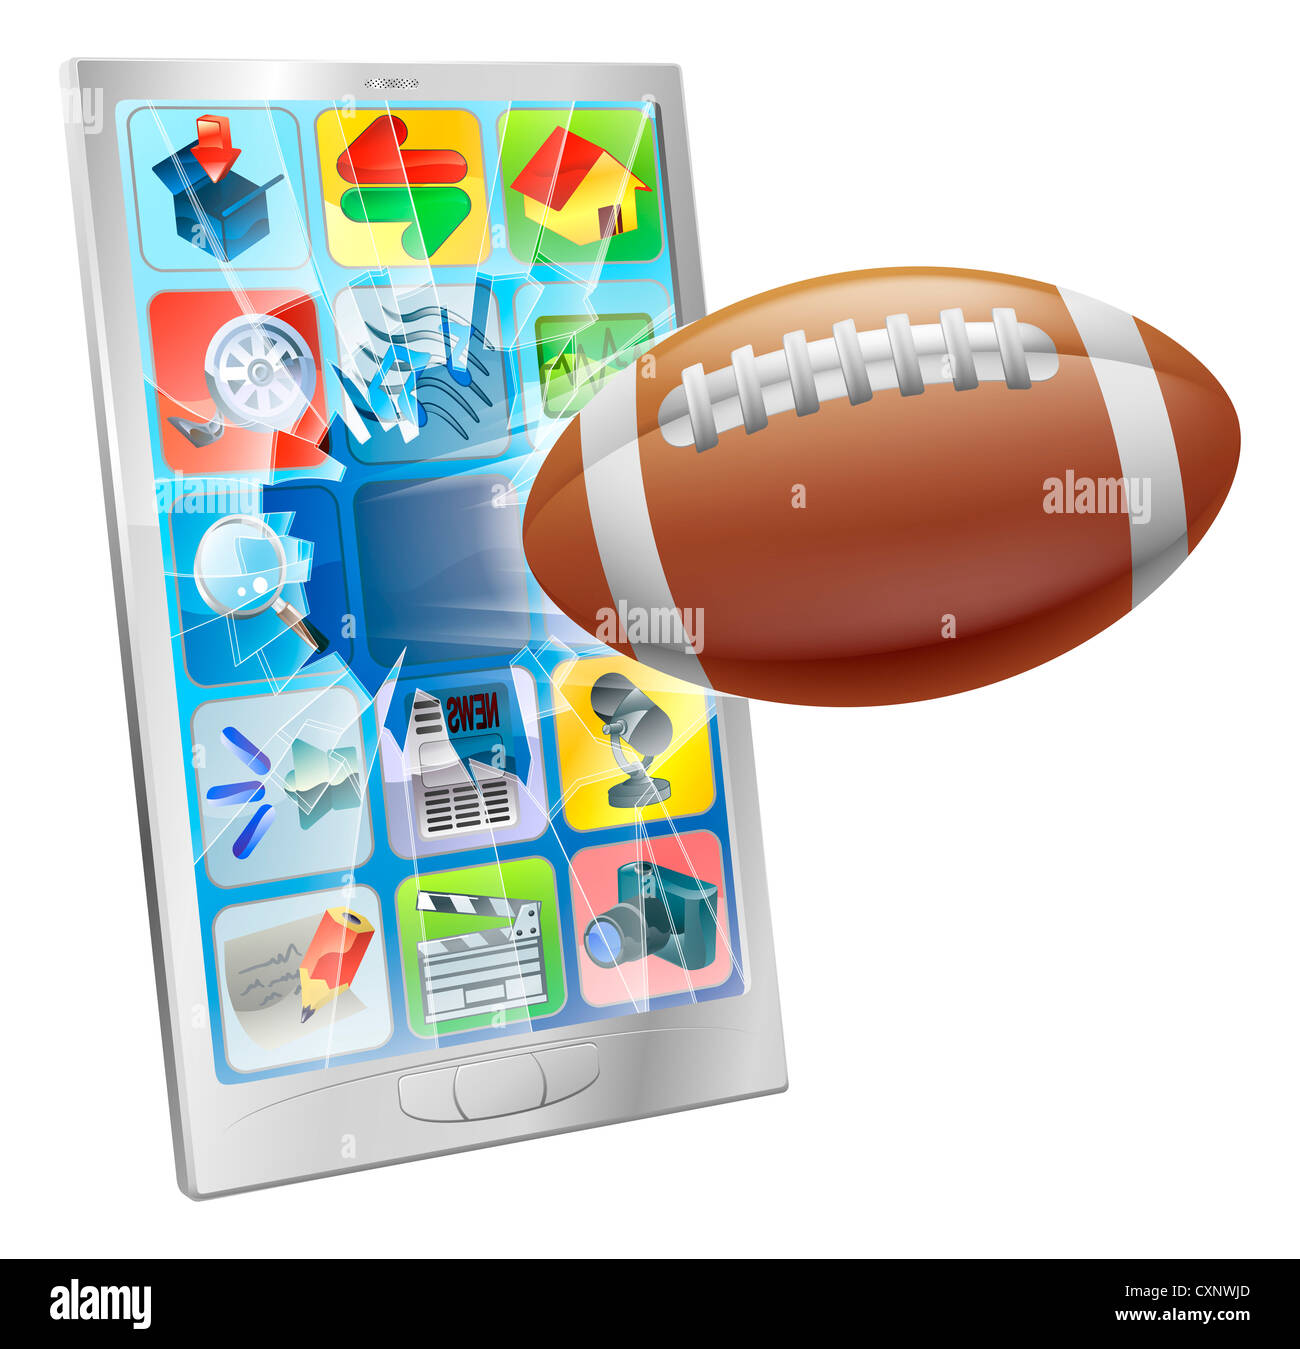 Ilustración de un balón de fútbol americano que volaba fuera de la pantalla del teléfono móvil Foto de stock